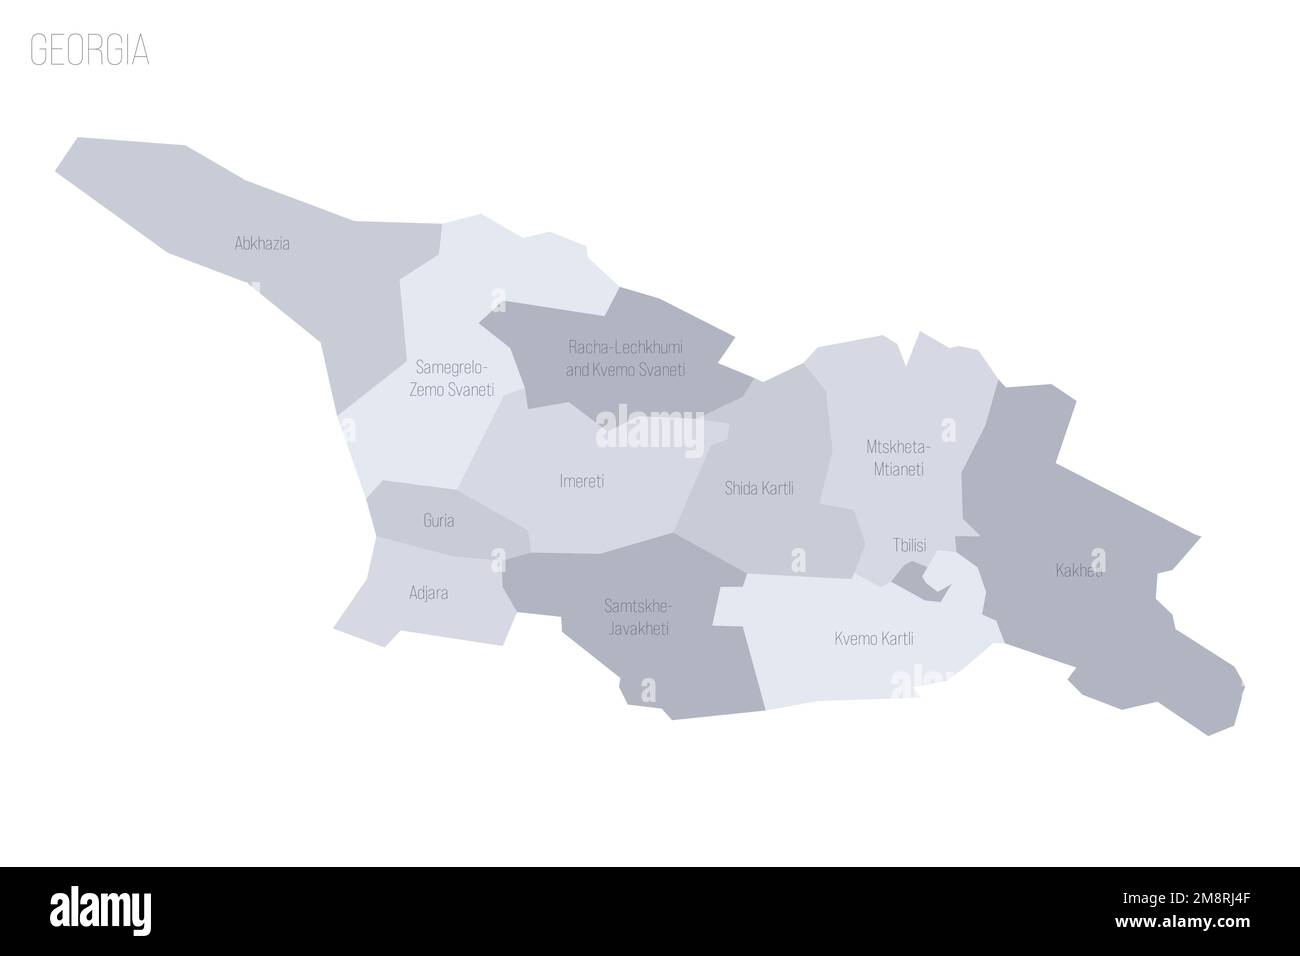 Georgia carta politica delle divisioni amministrative - regioni e repubbliche autonome di Abkhasia e Adjara. Mappa vettoriale dei grigi con etichette. Illustrazione Vettoriale